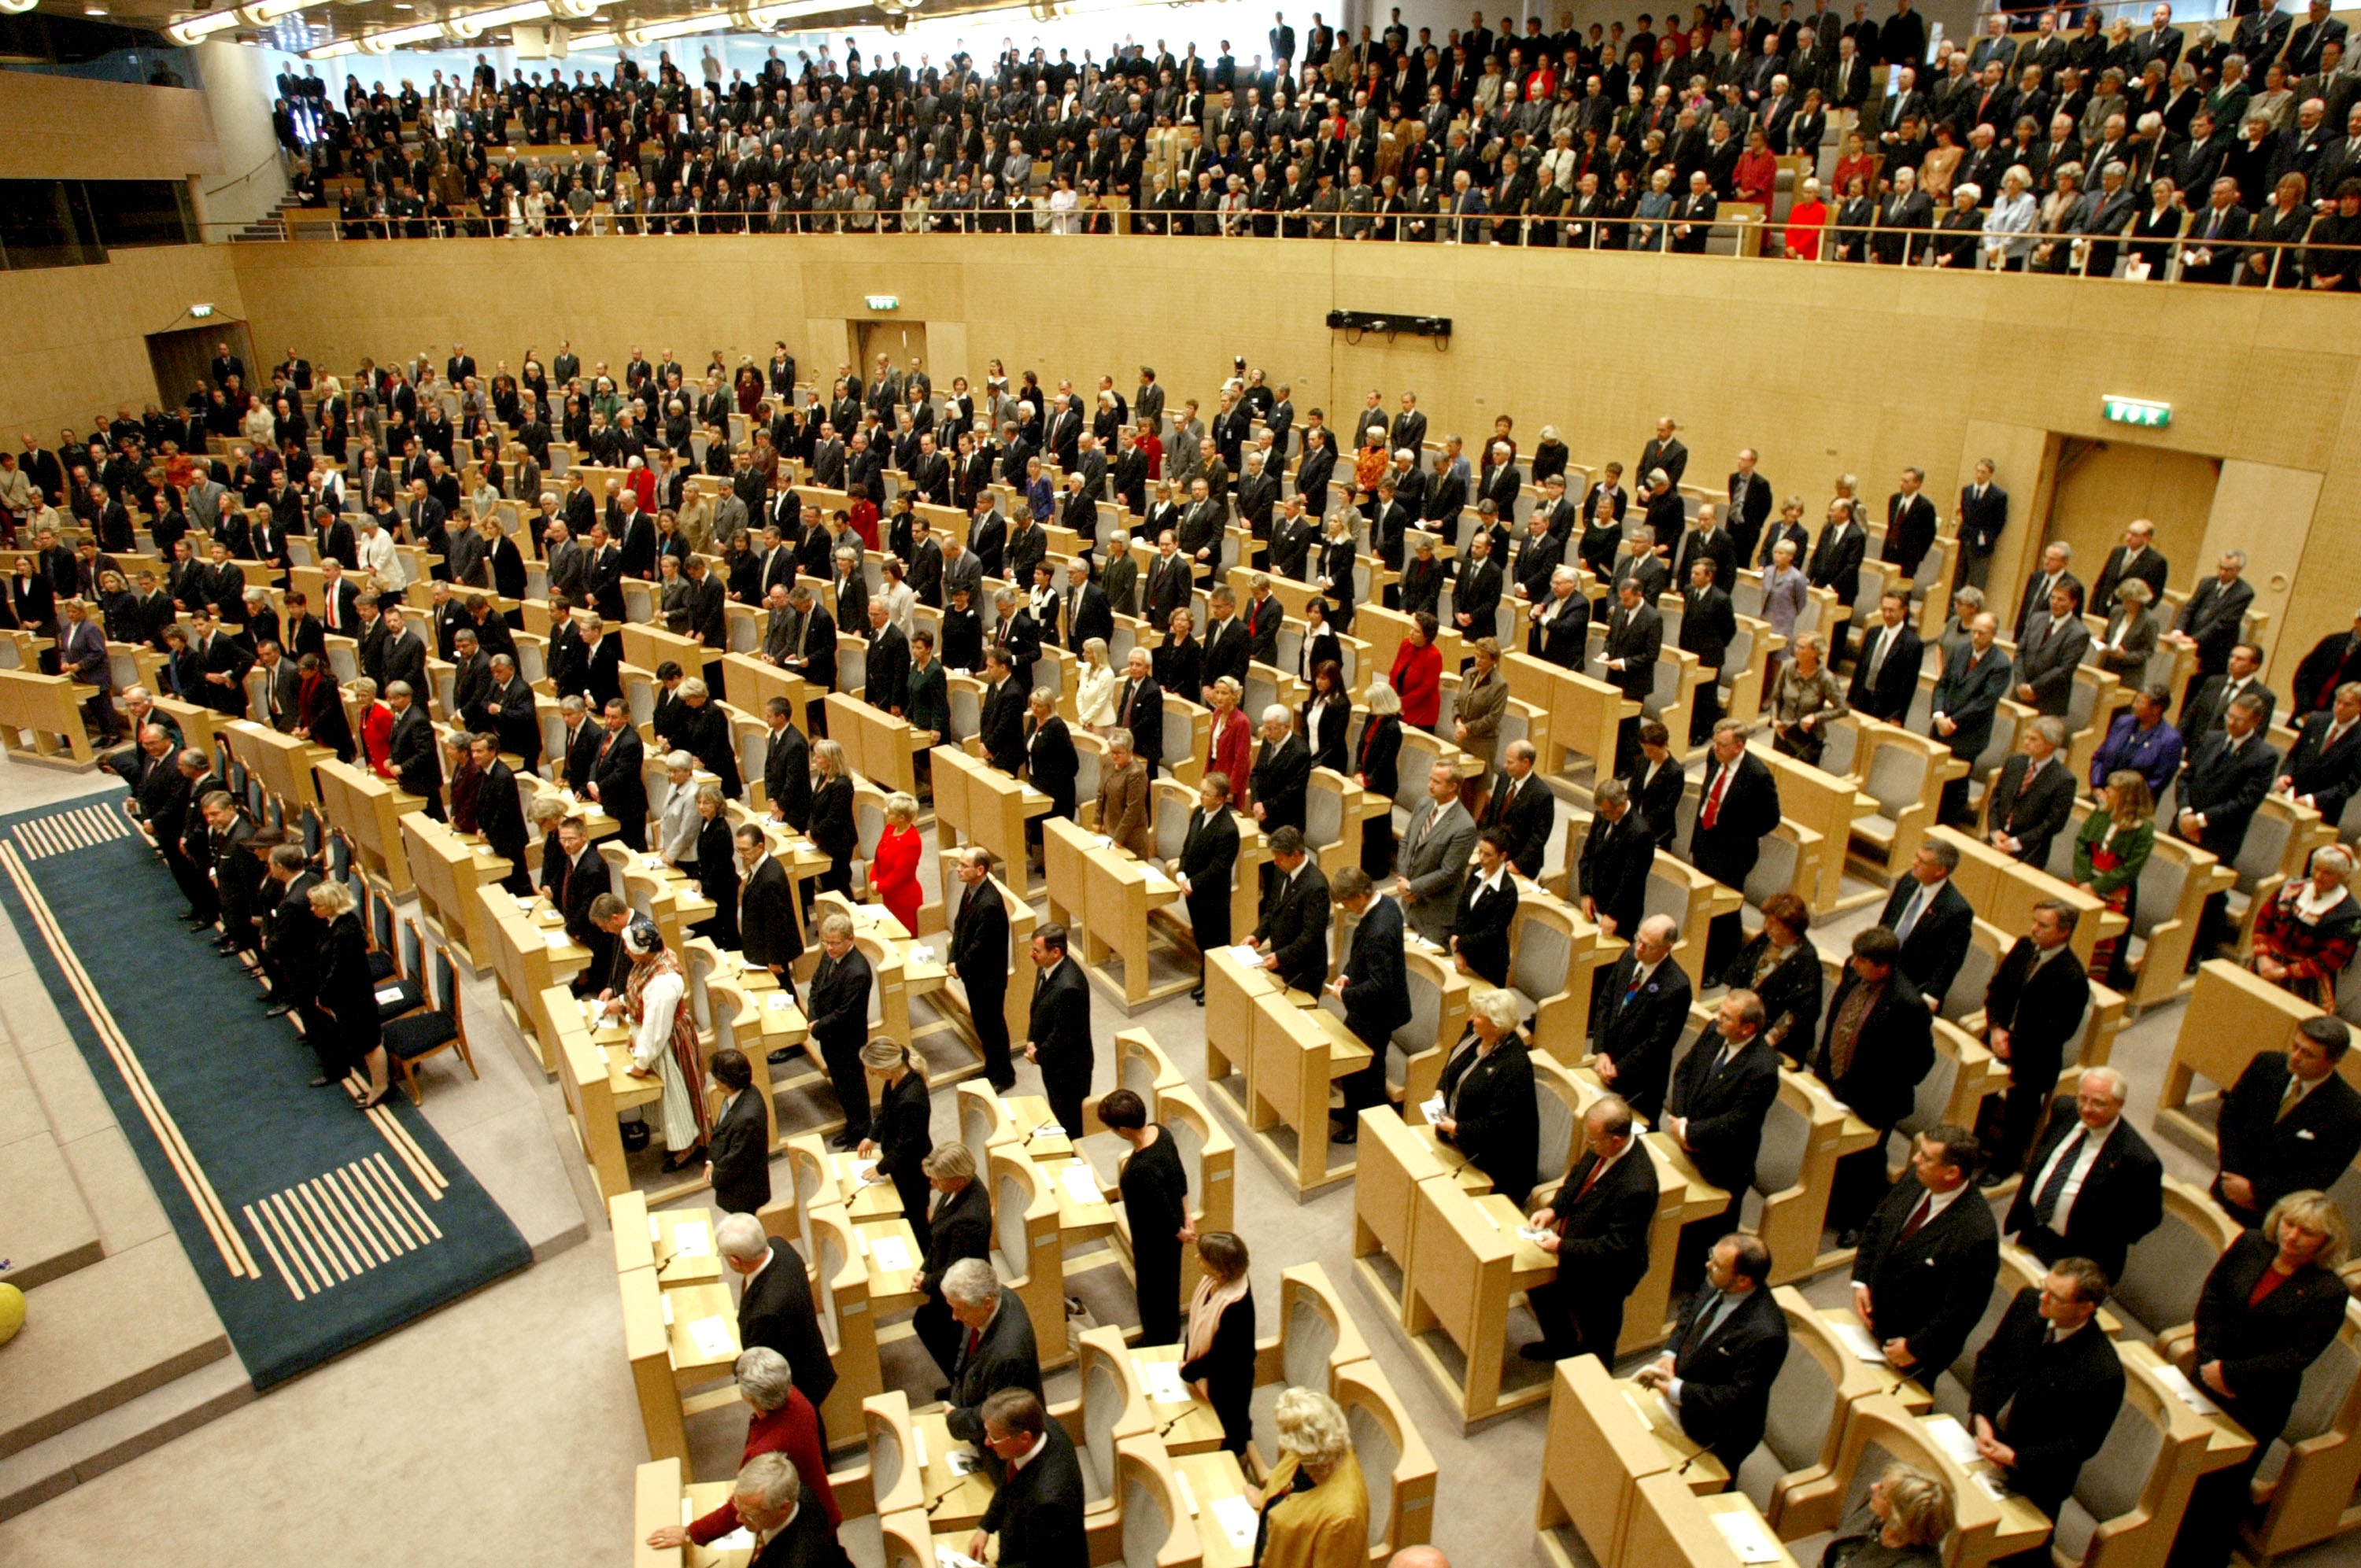 Maktkamp24, Sveriges sexigaste politiker, Regeringen, Politik, Riksdagsvalet 2010